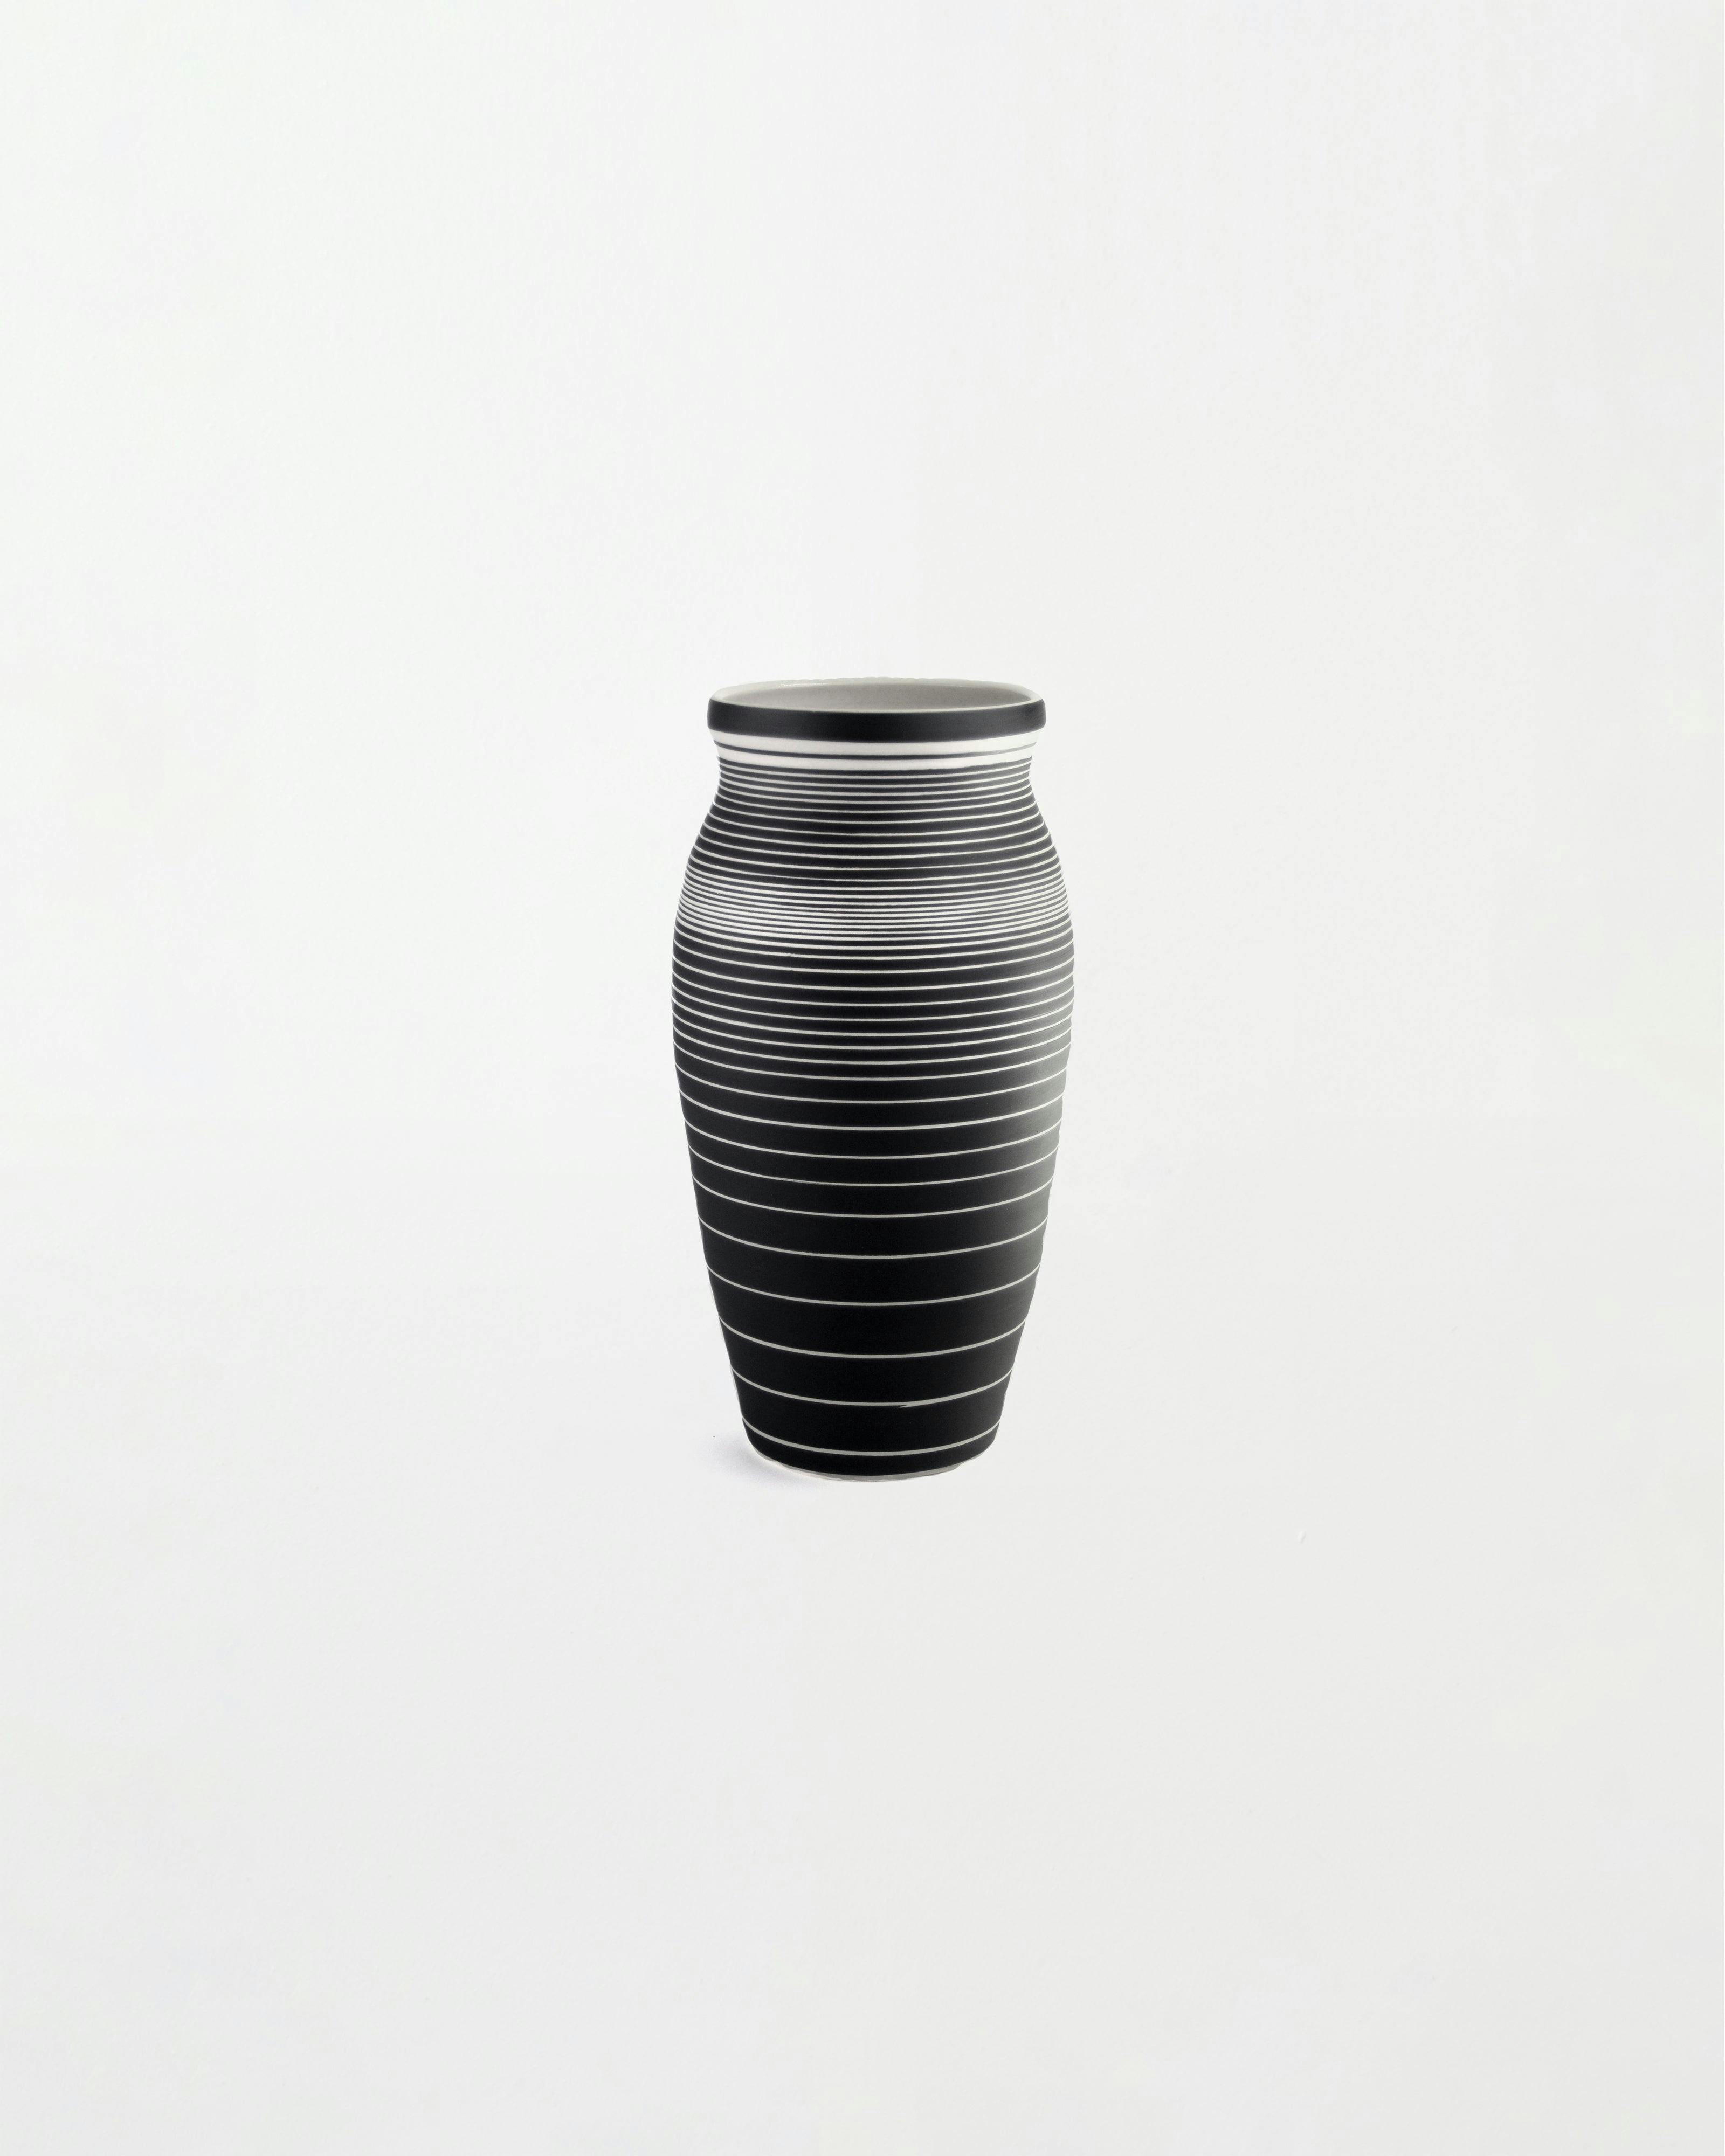 Sculpture by Dana Bechert titled "Tall Gradient Vase".